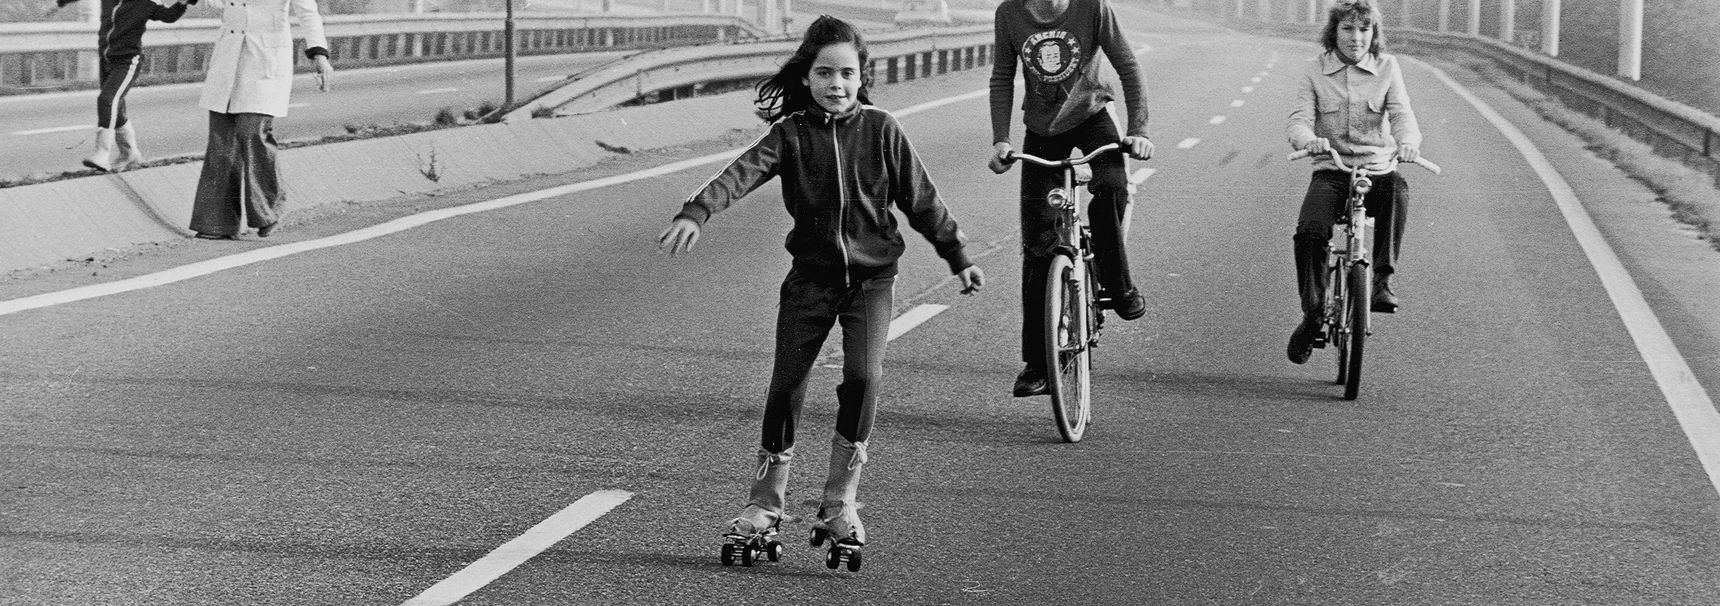 Kinderen rolschaatsen en fietsen op de snelweg tijdens een autoloze zondag, 1973. (Beeld: Benelux Press)